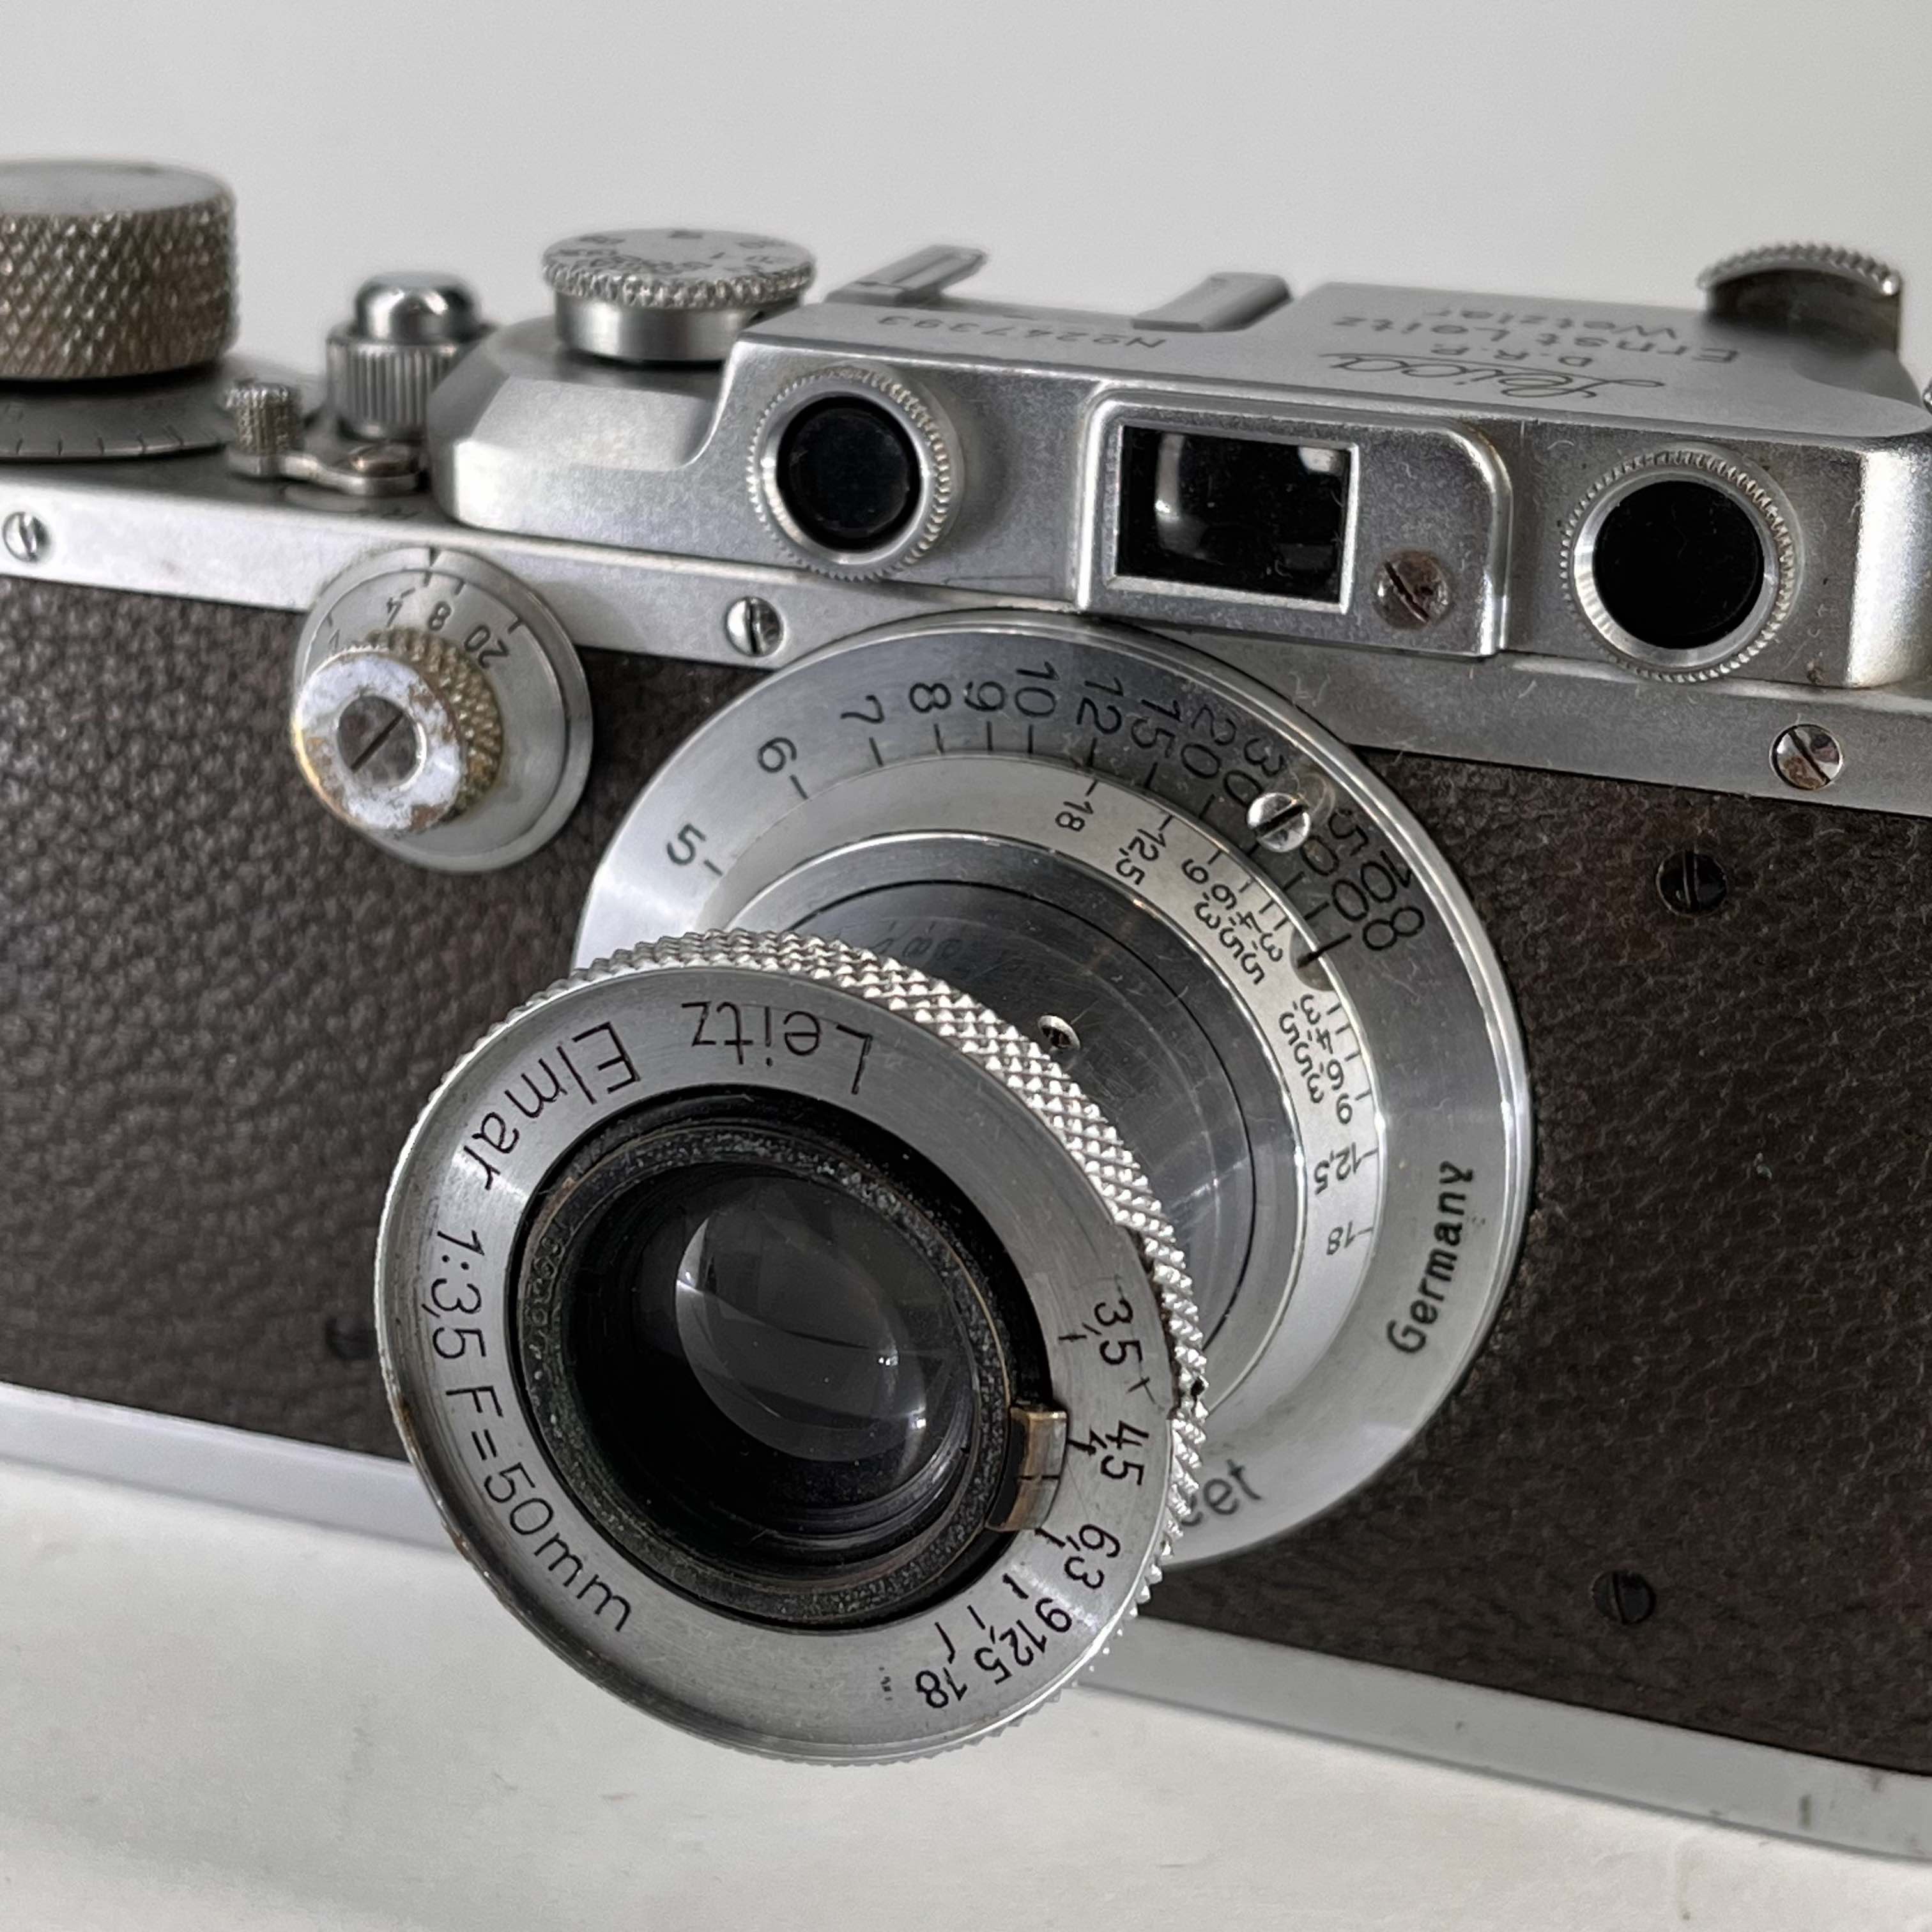 Leica IIIa rangefinder (1938) with Elmar 50mm f/3.5 lens